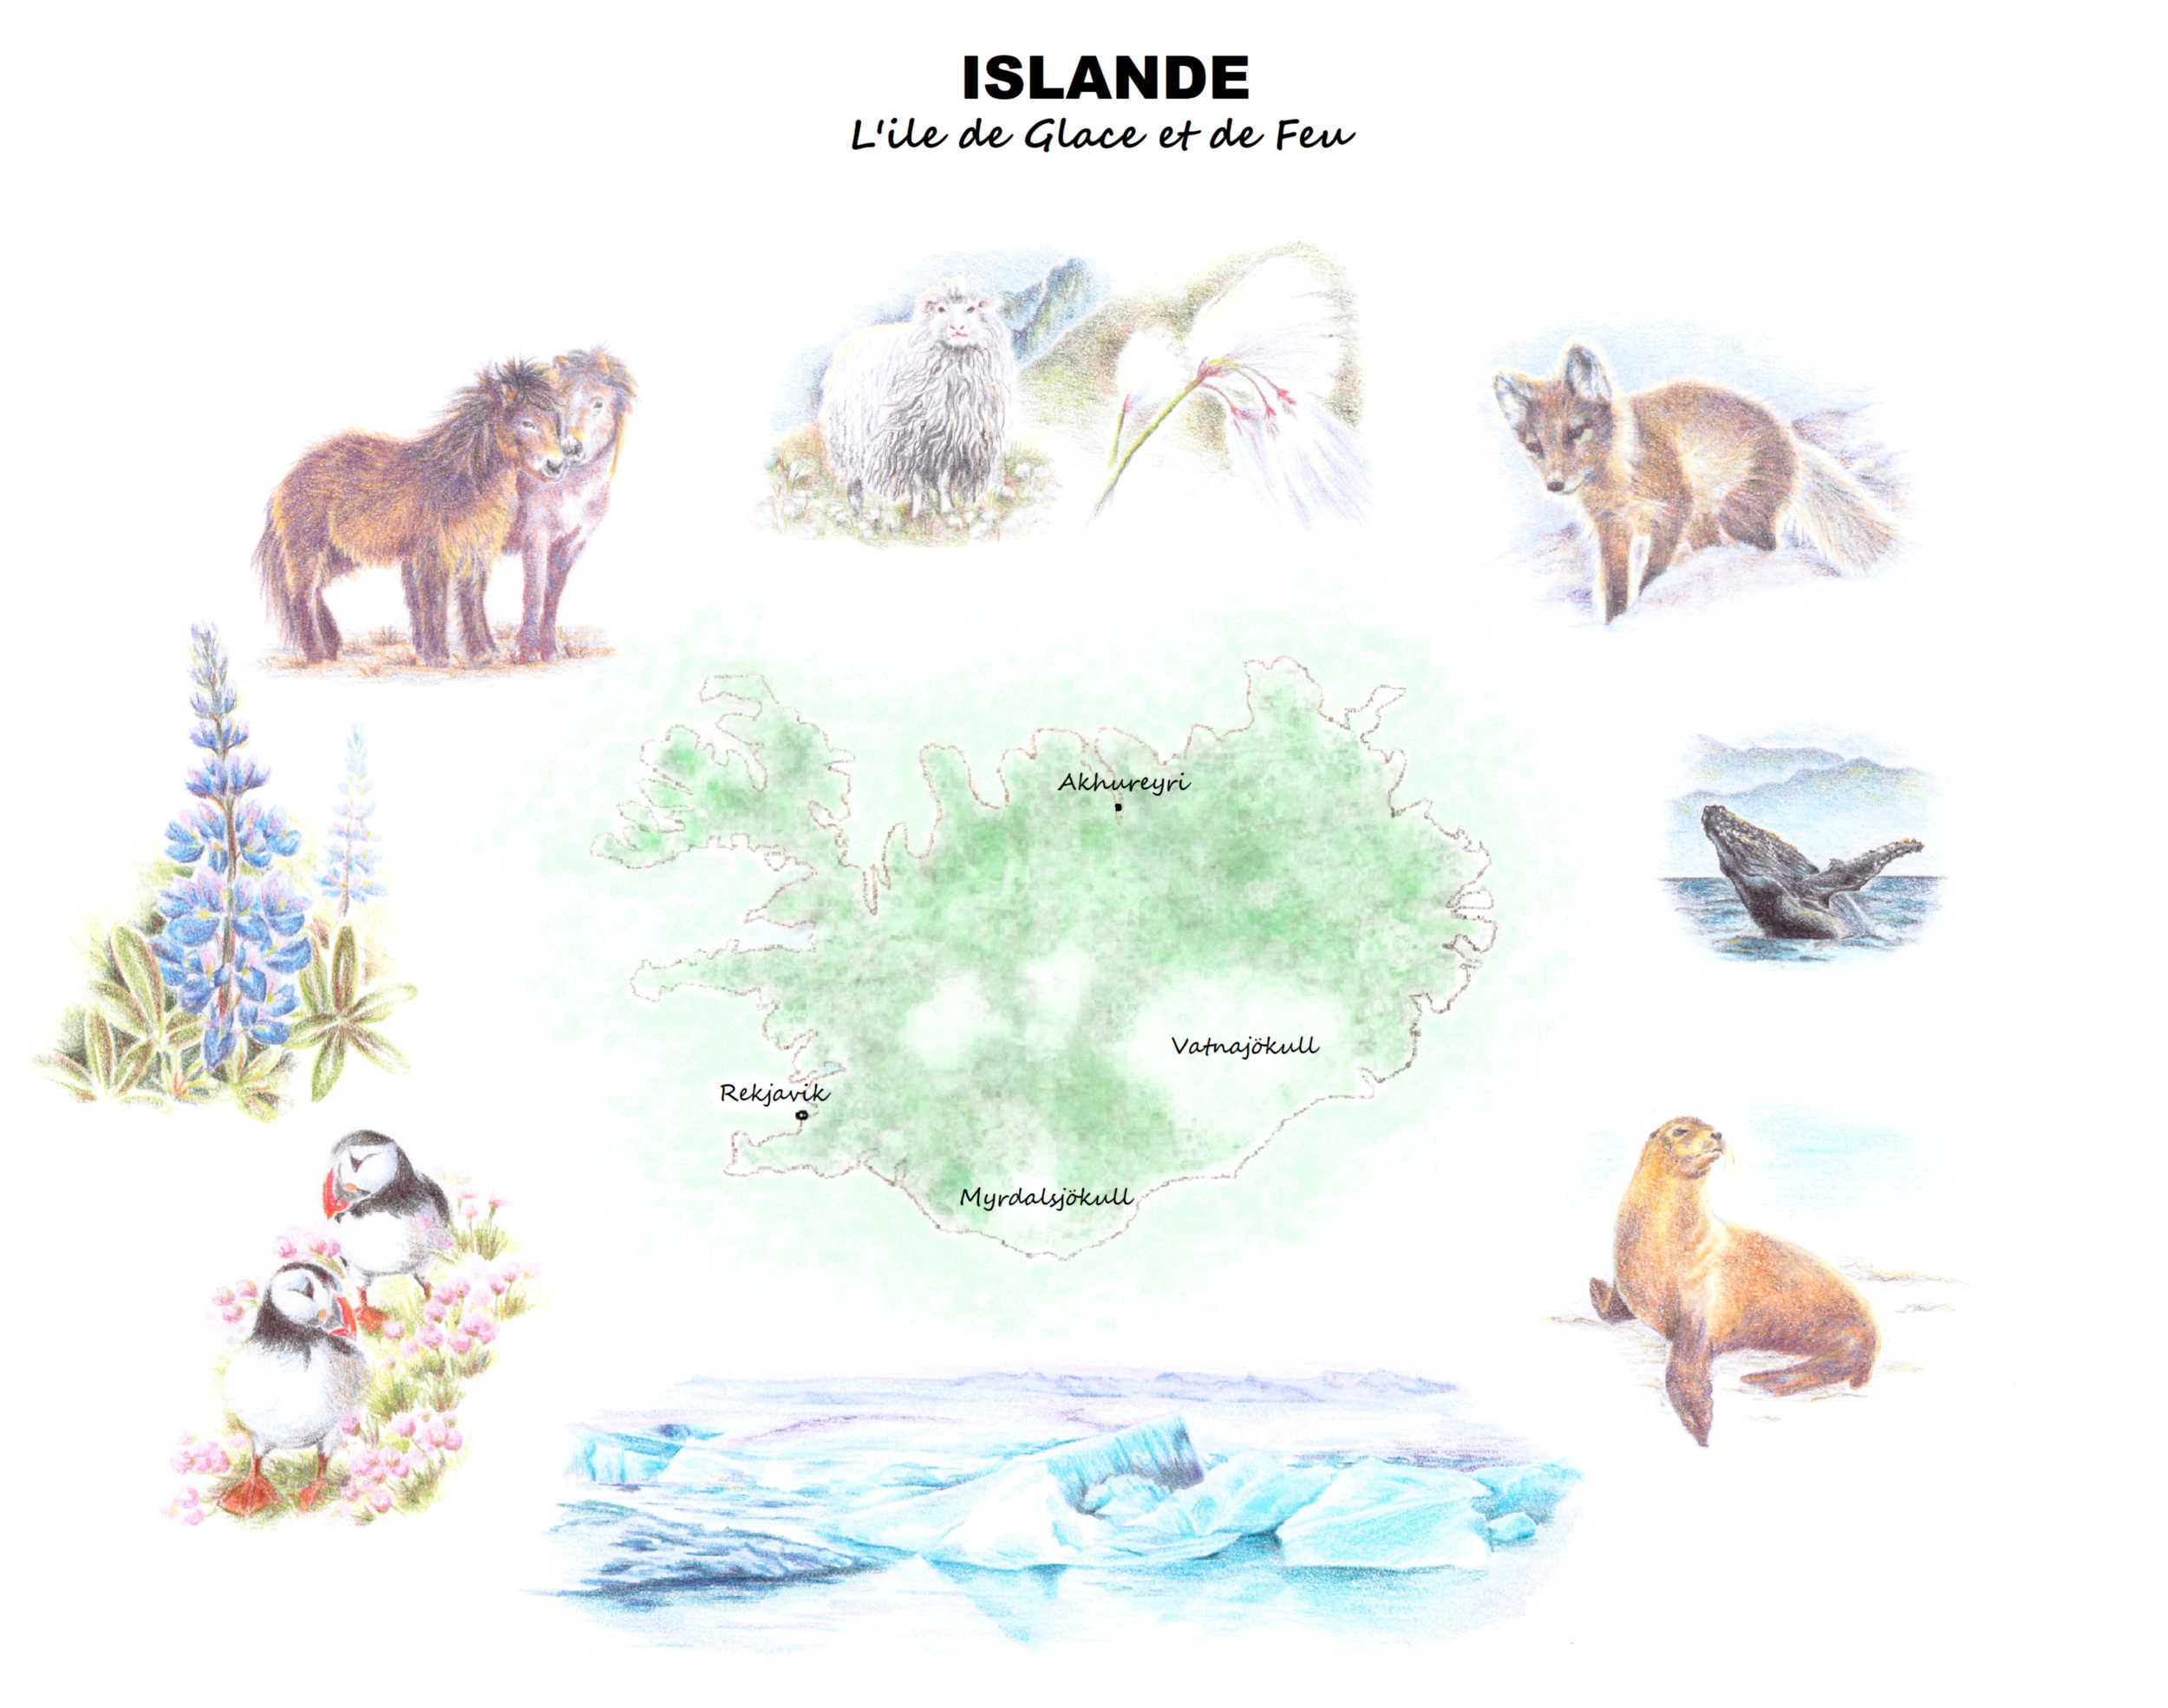 Islande - Carte illustrée